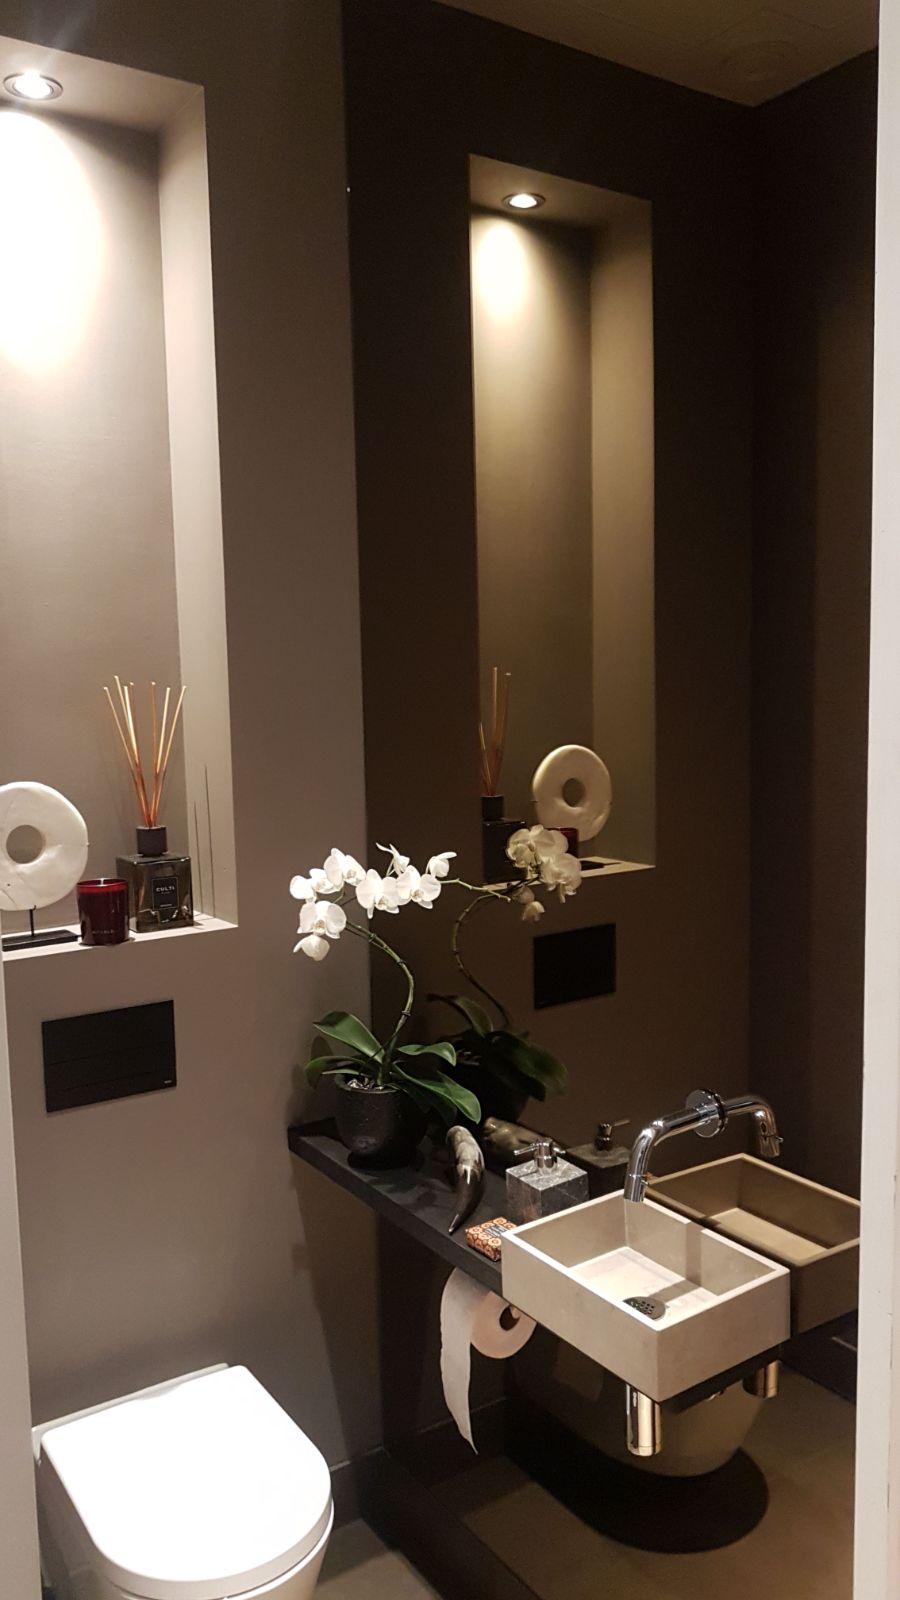 Bronzen spiegel over hele muur van het toilet